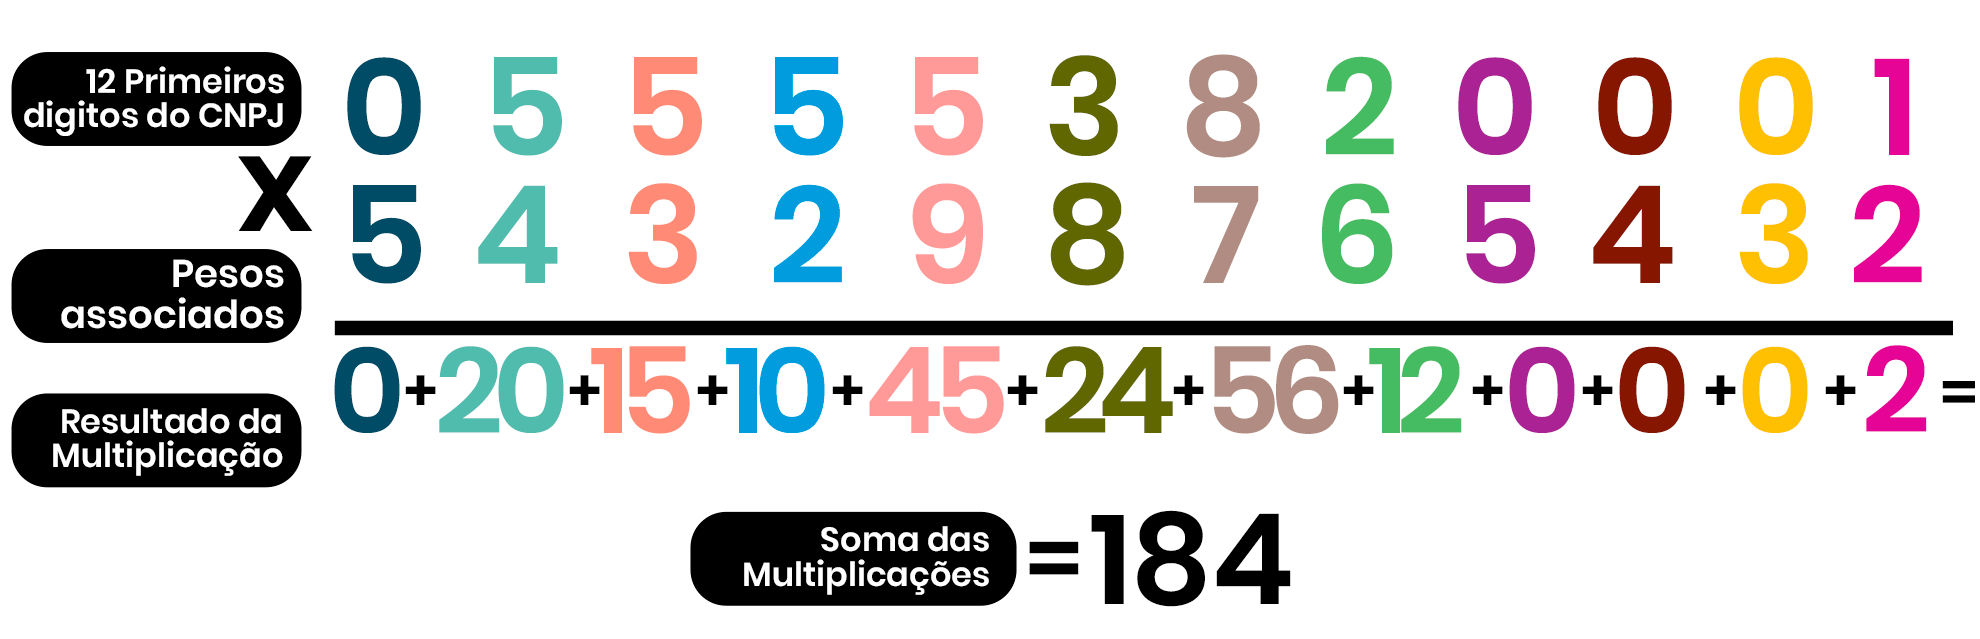 Imagem ilustra a multiplicação dos 12 primeiros dígitos do CNPJ (055553820001) e seus respectivos pesos (5,4,3,2,9,8,7,6,5,4,3,2); além disso, mostra os resultados de cada multiplicação (0,20,15,10,45,24,56,12,0,0,0,2), sendo que os resultados das multiplicações foram somados para obter o número 184.